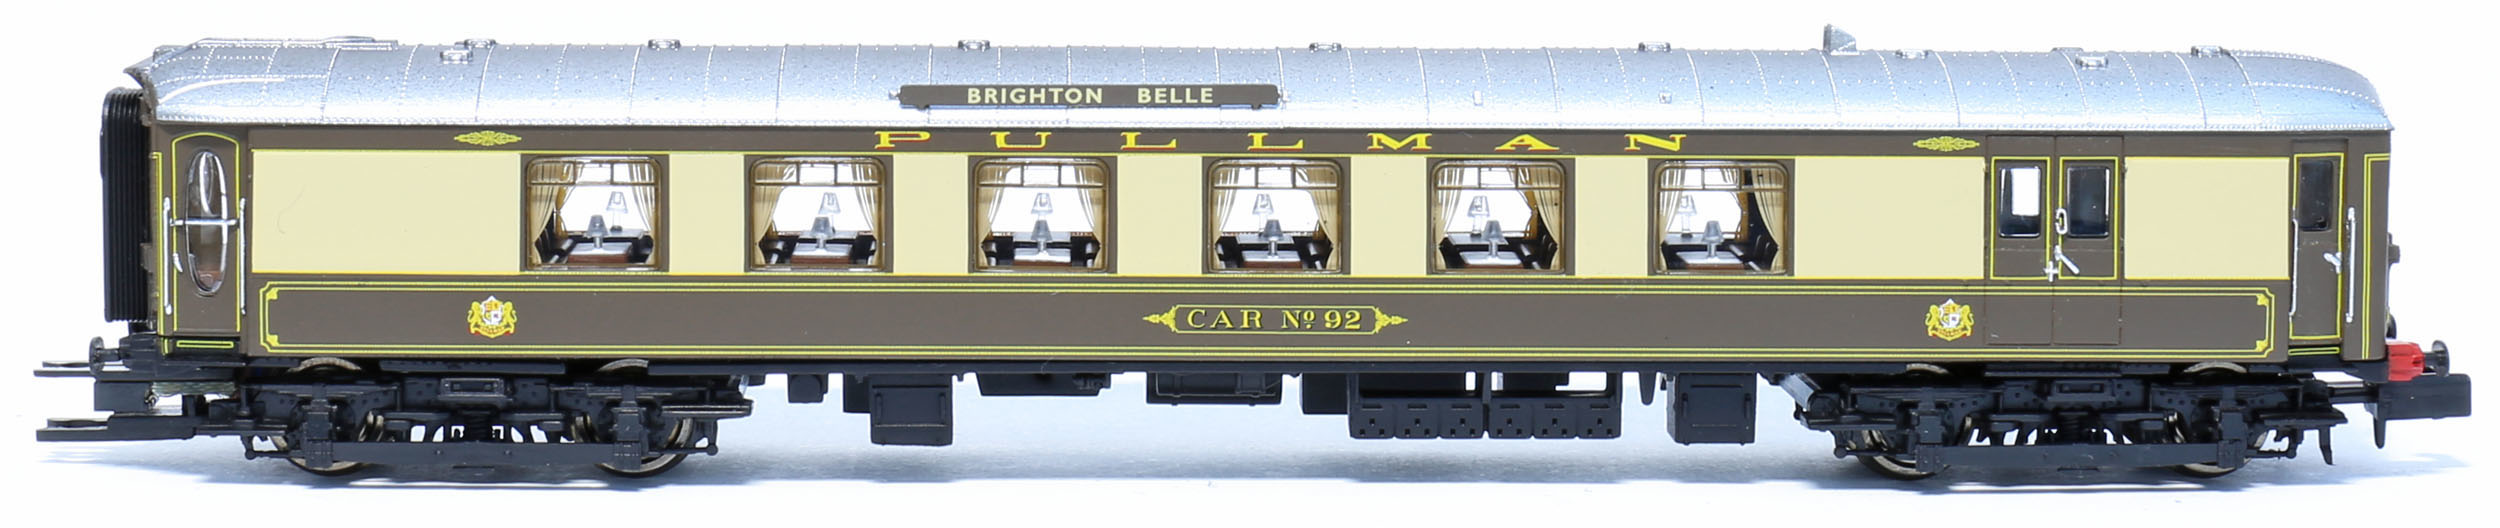 Arnold HN3006 SR 5-BEL Brighton Belle Car No 92 Image